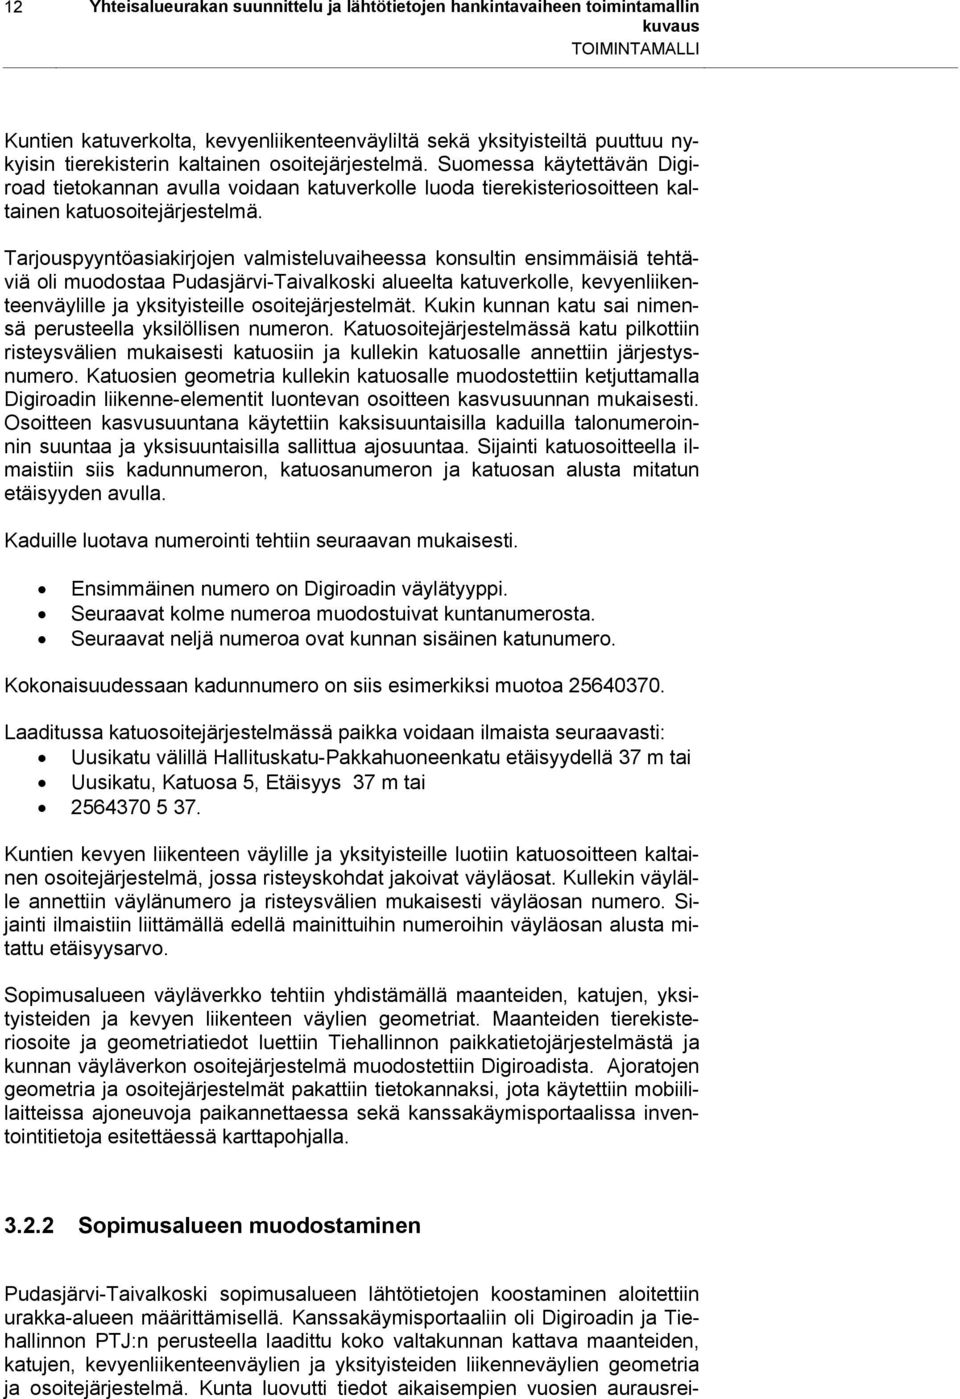 Tarjouspyyntöasiakirjojen valmisteluvaiheessa konsultin ensimmäisiä tehtäviä oli muodostaa Pudasjärvi-Taivalkoski alueelta katuverkolle, kevyenliikenteenväylille ja yksityisteille osoitejärjestelmät.